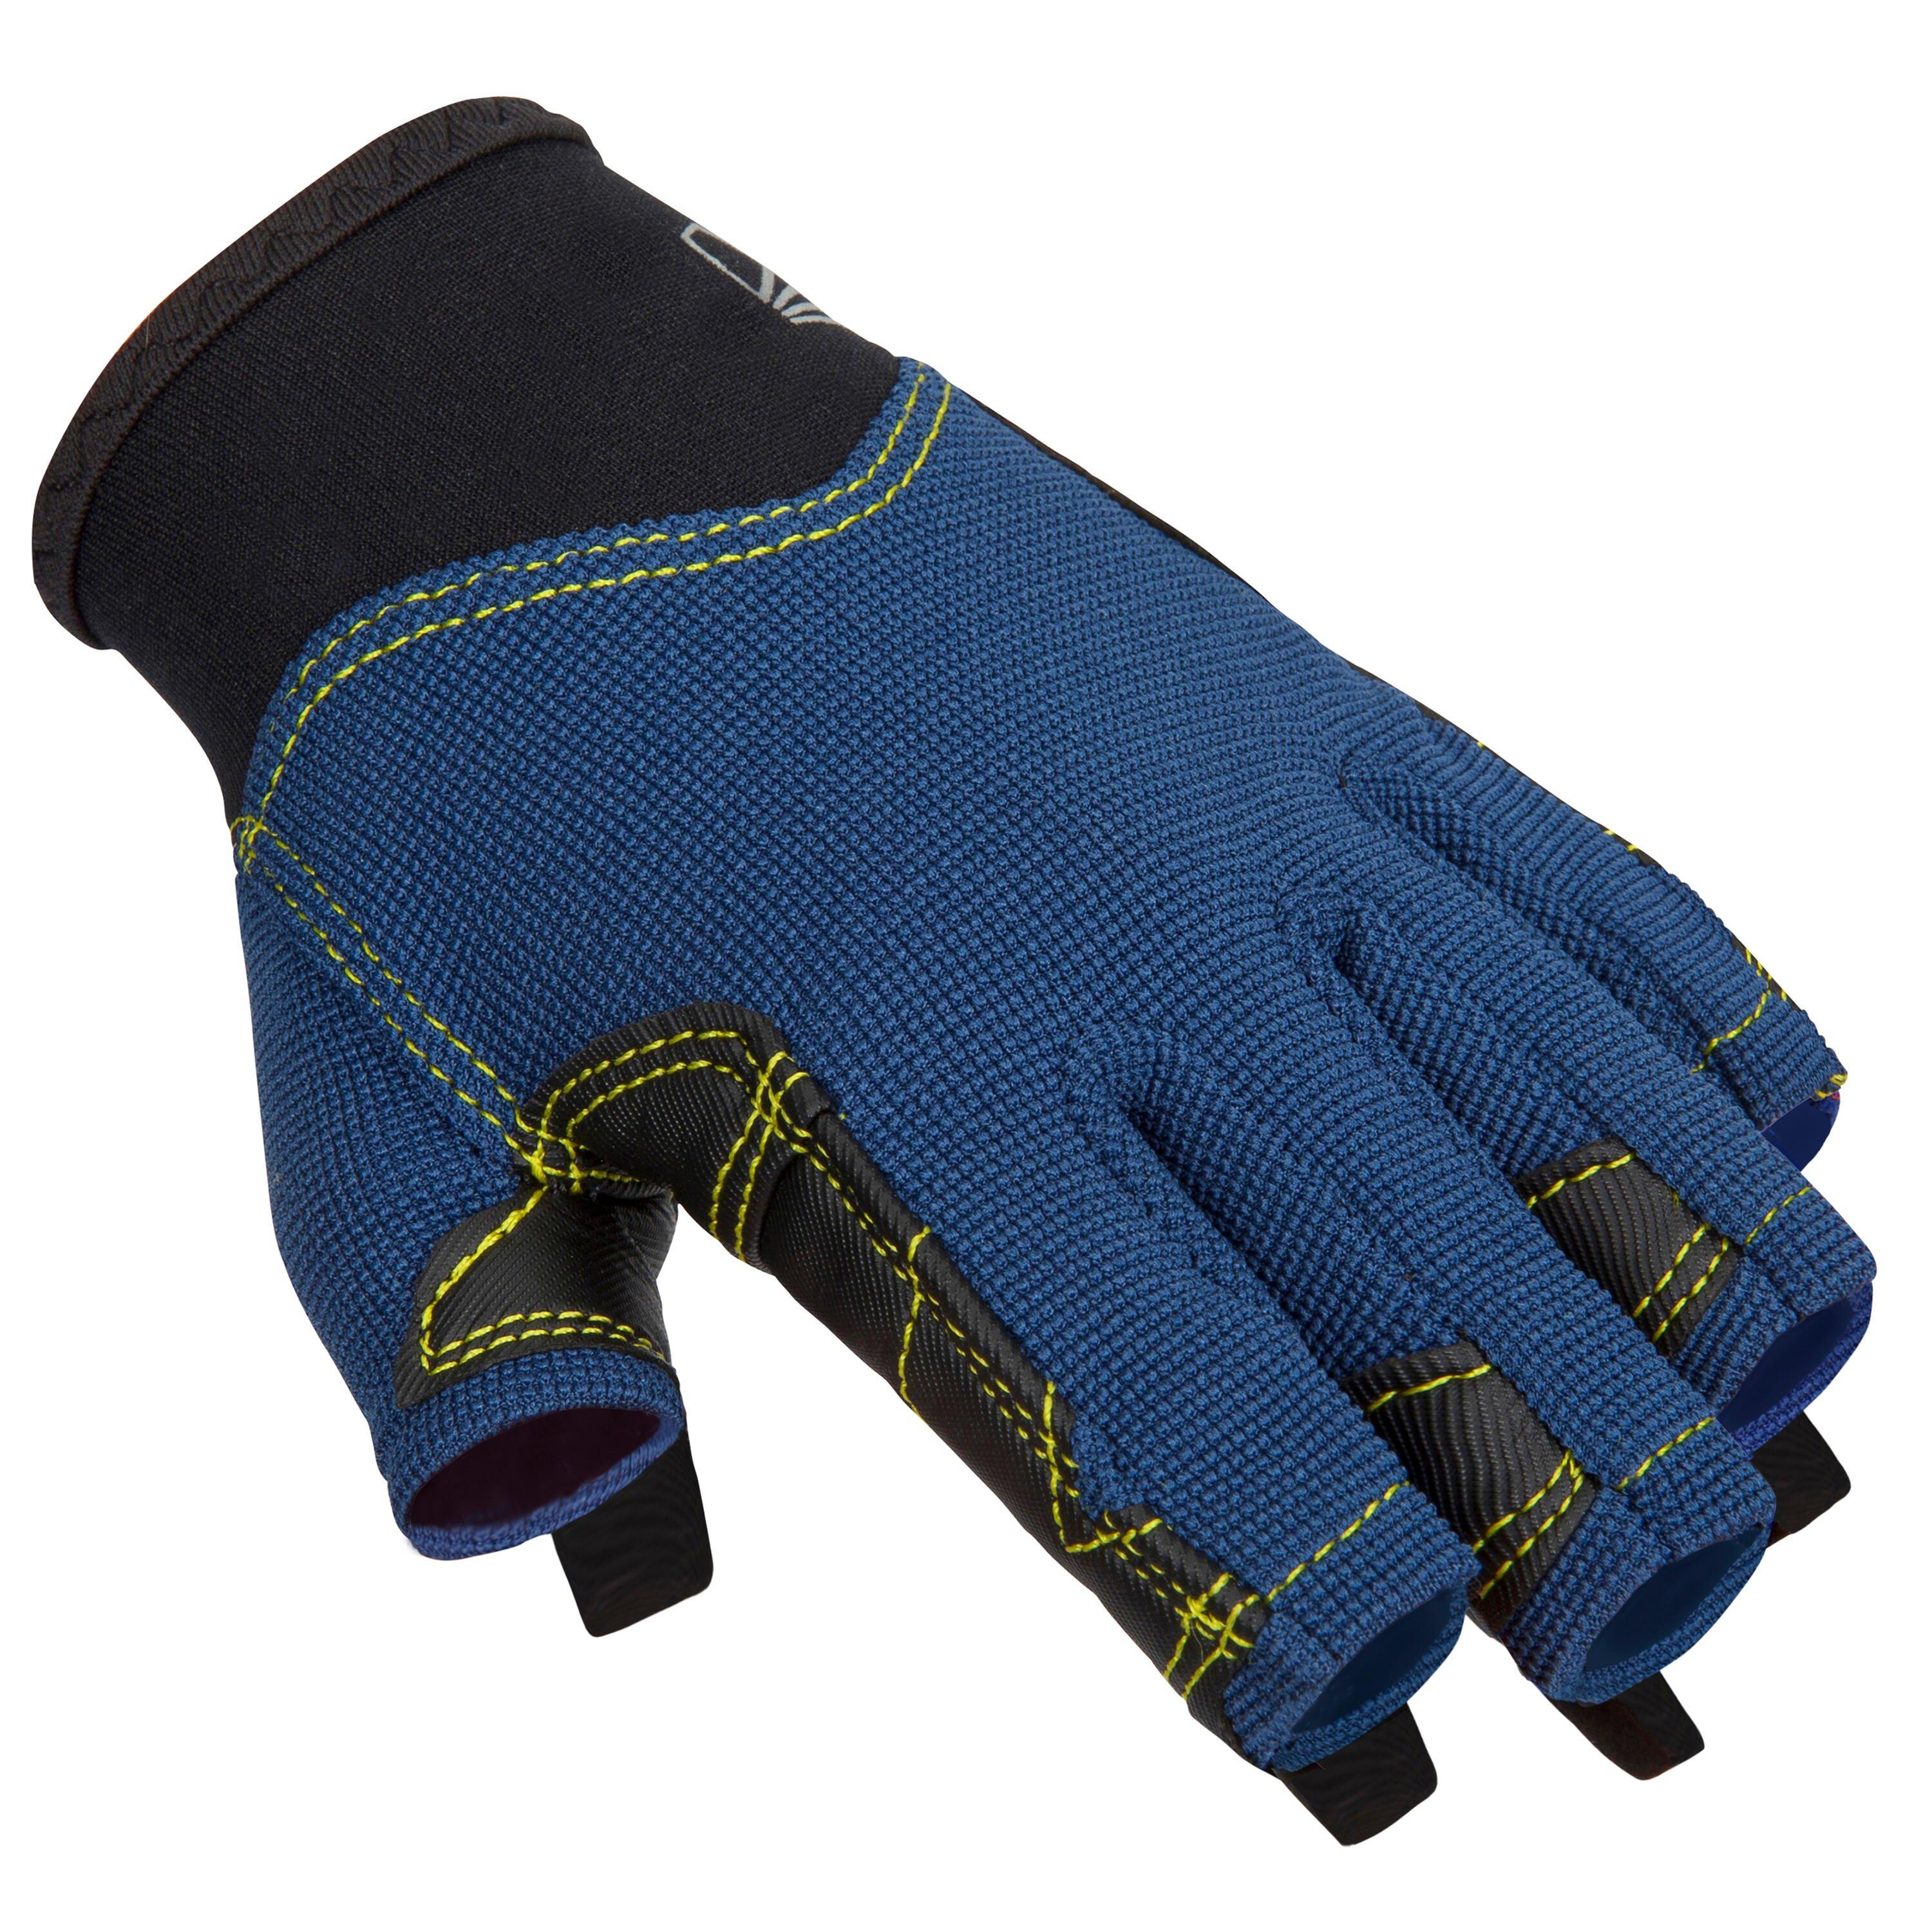 Fingerless Sailing Gloves 500